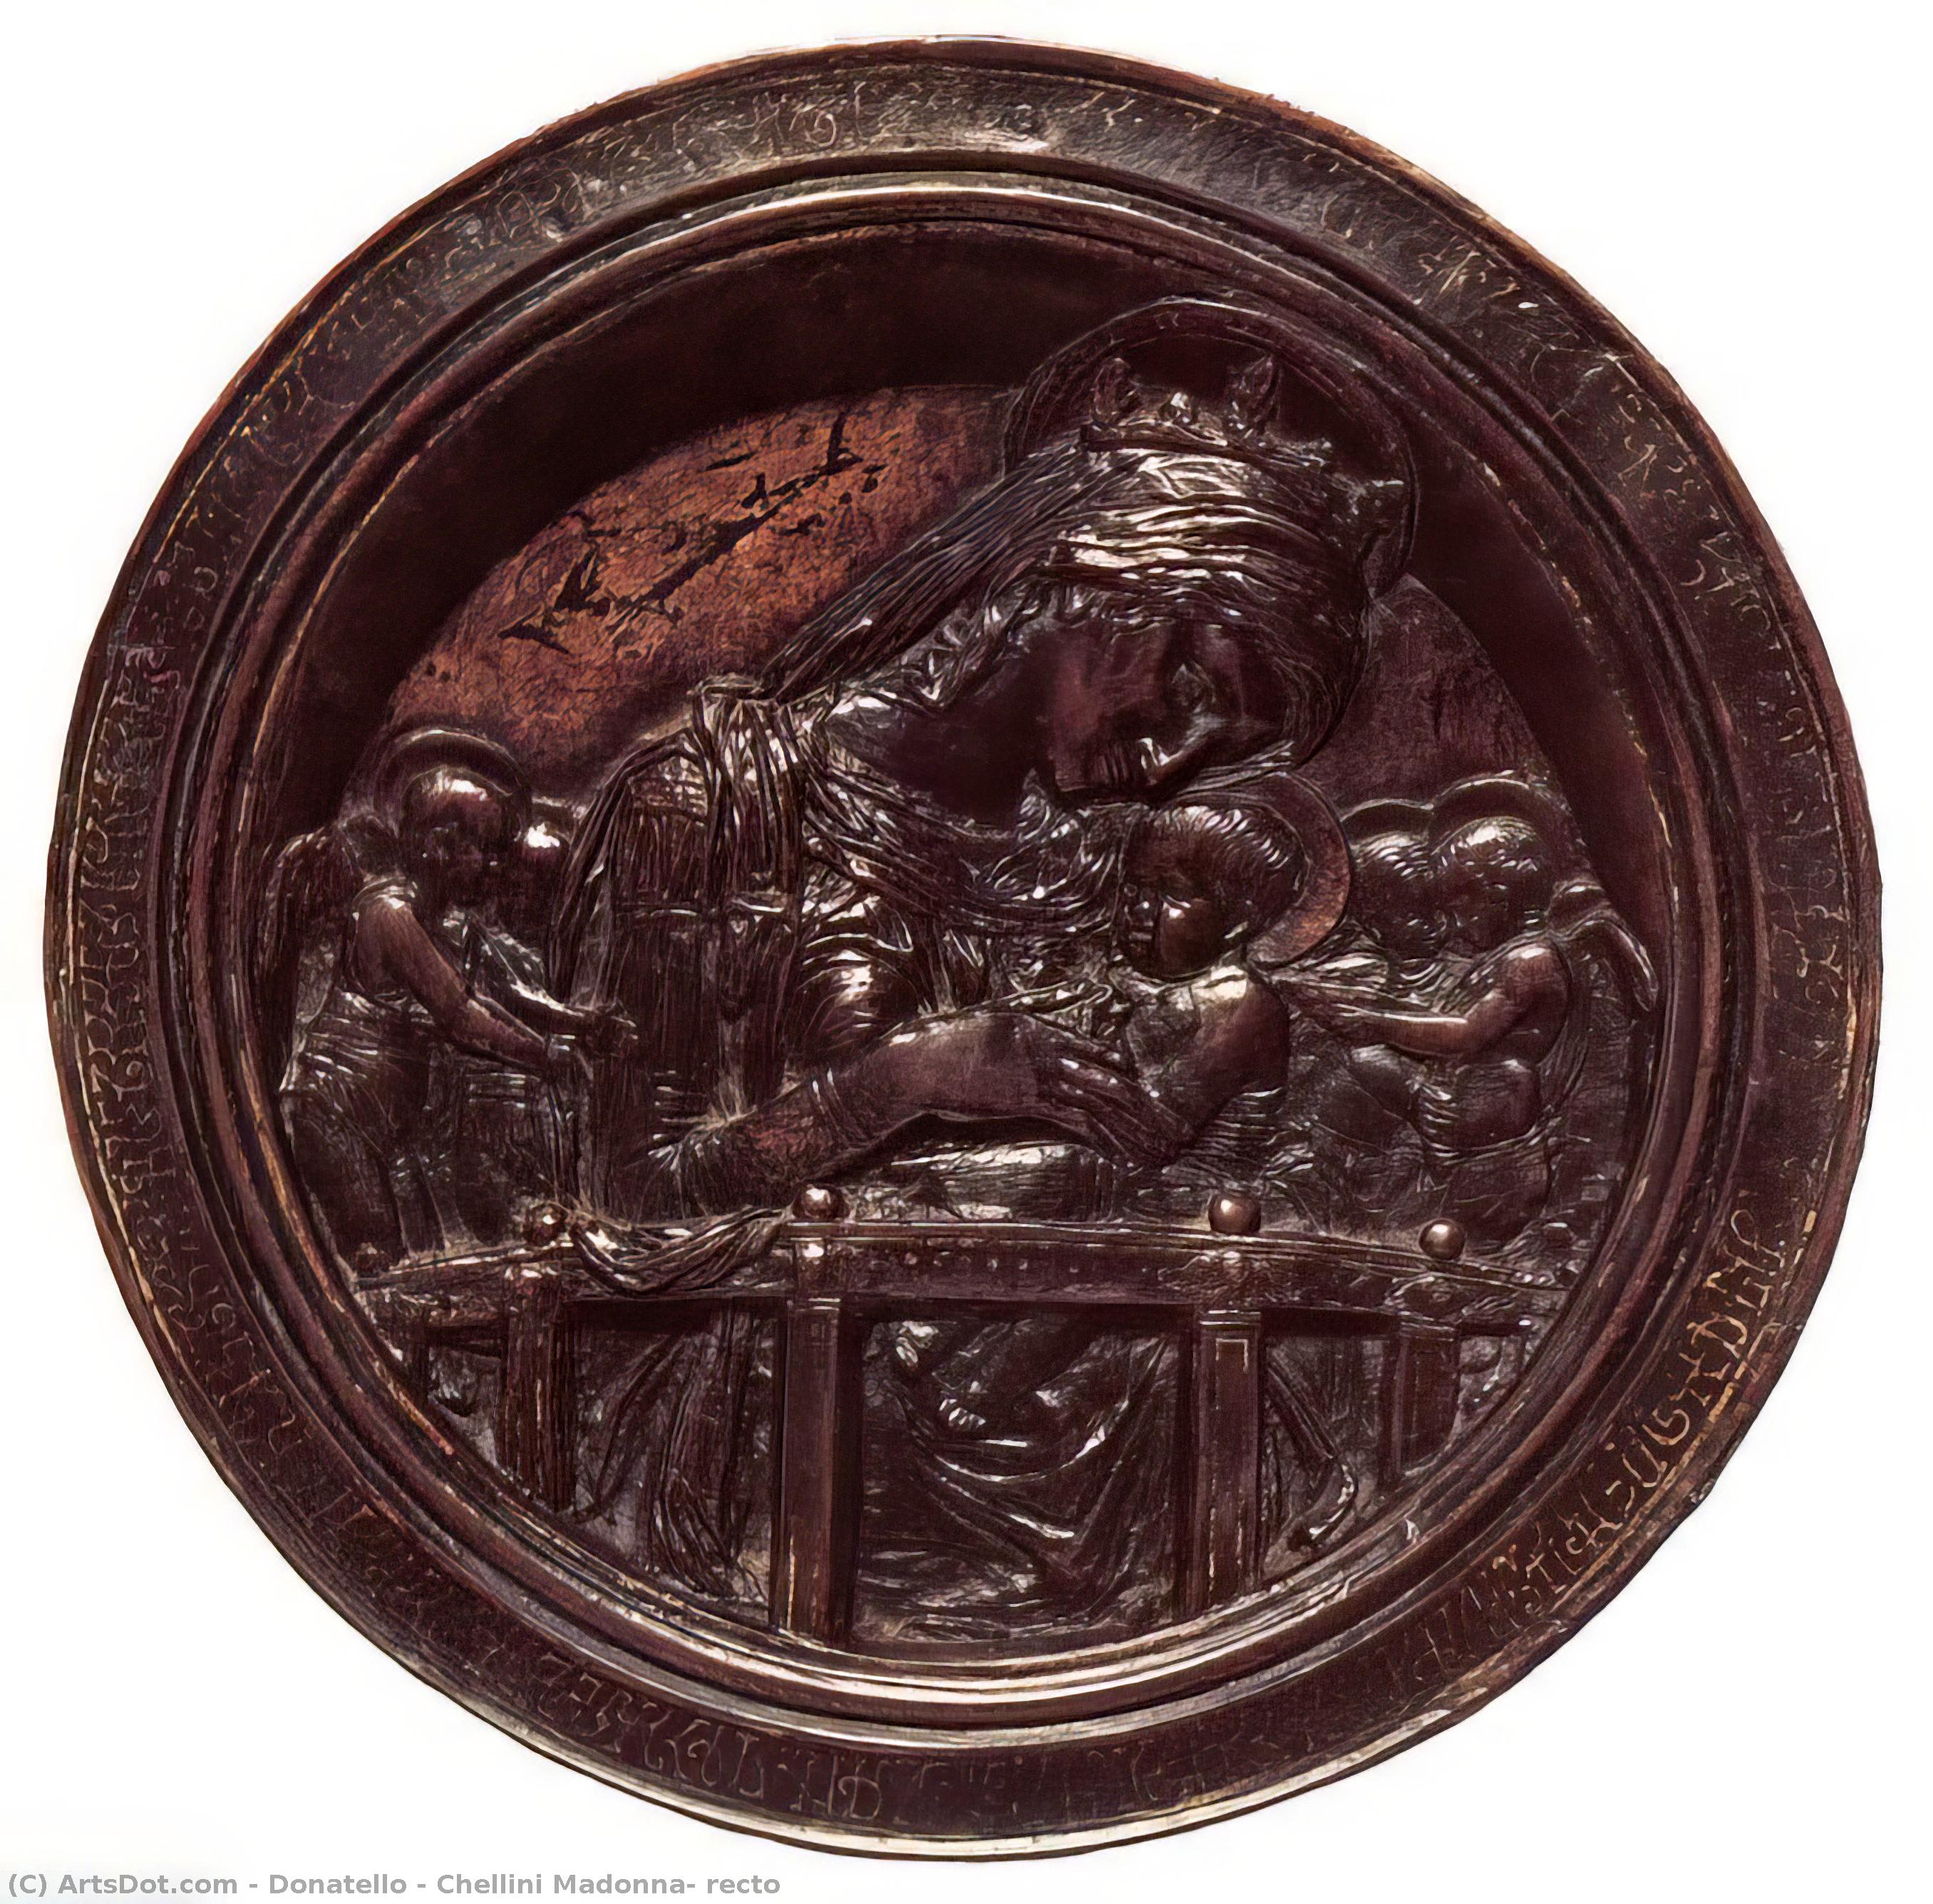 Ordinare Riproduzioni D'arte Madonna Chellini, retto di Donatello (1386-1466, Italy) | ArtsDot.com